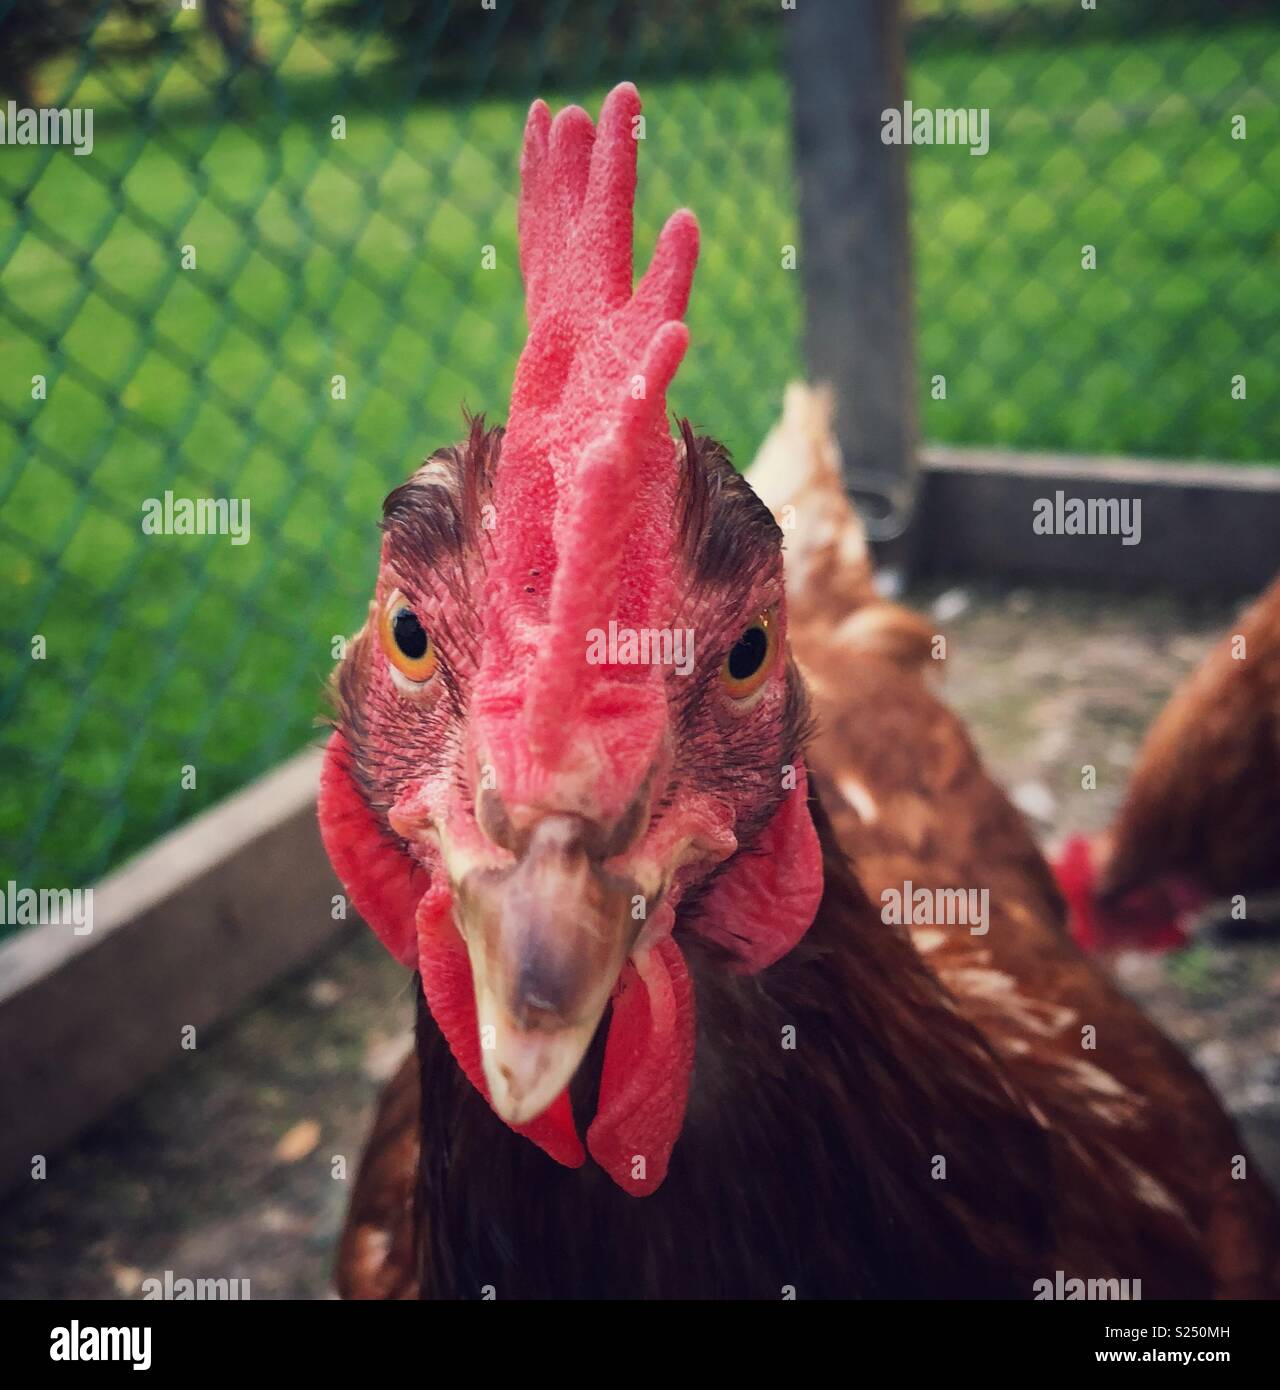 Arrabbiato cercando Rhode Island red ritratto di pollo Foto Stock